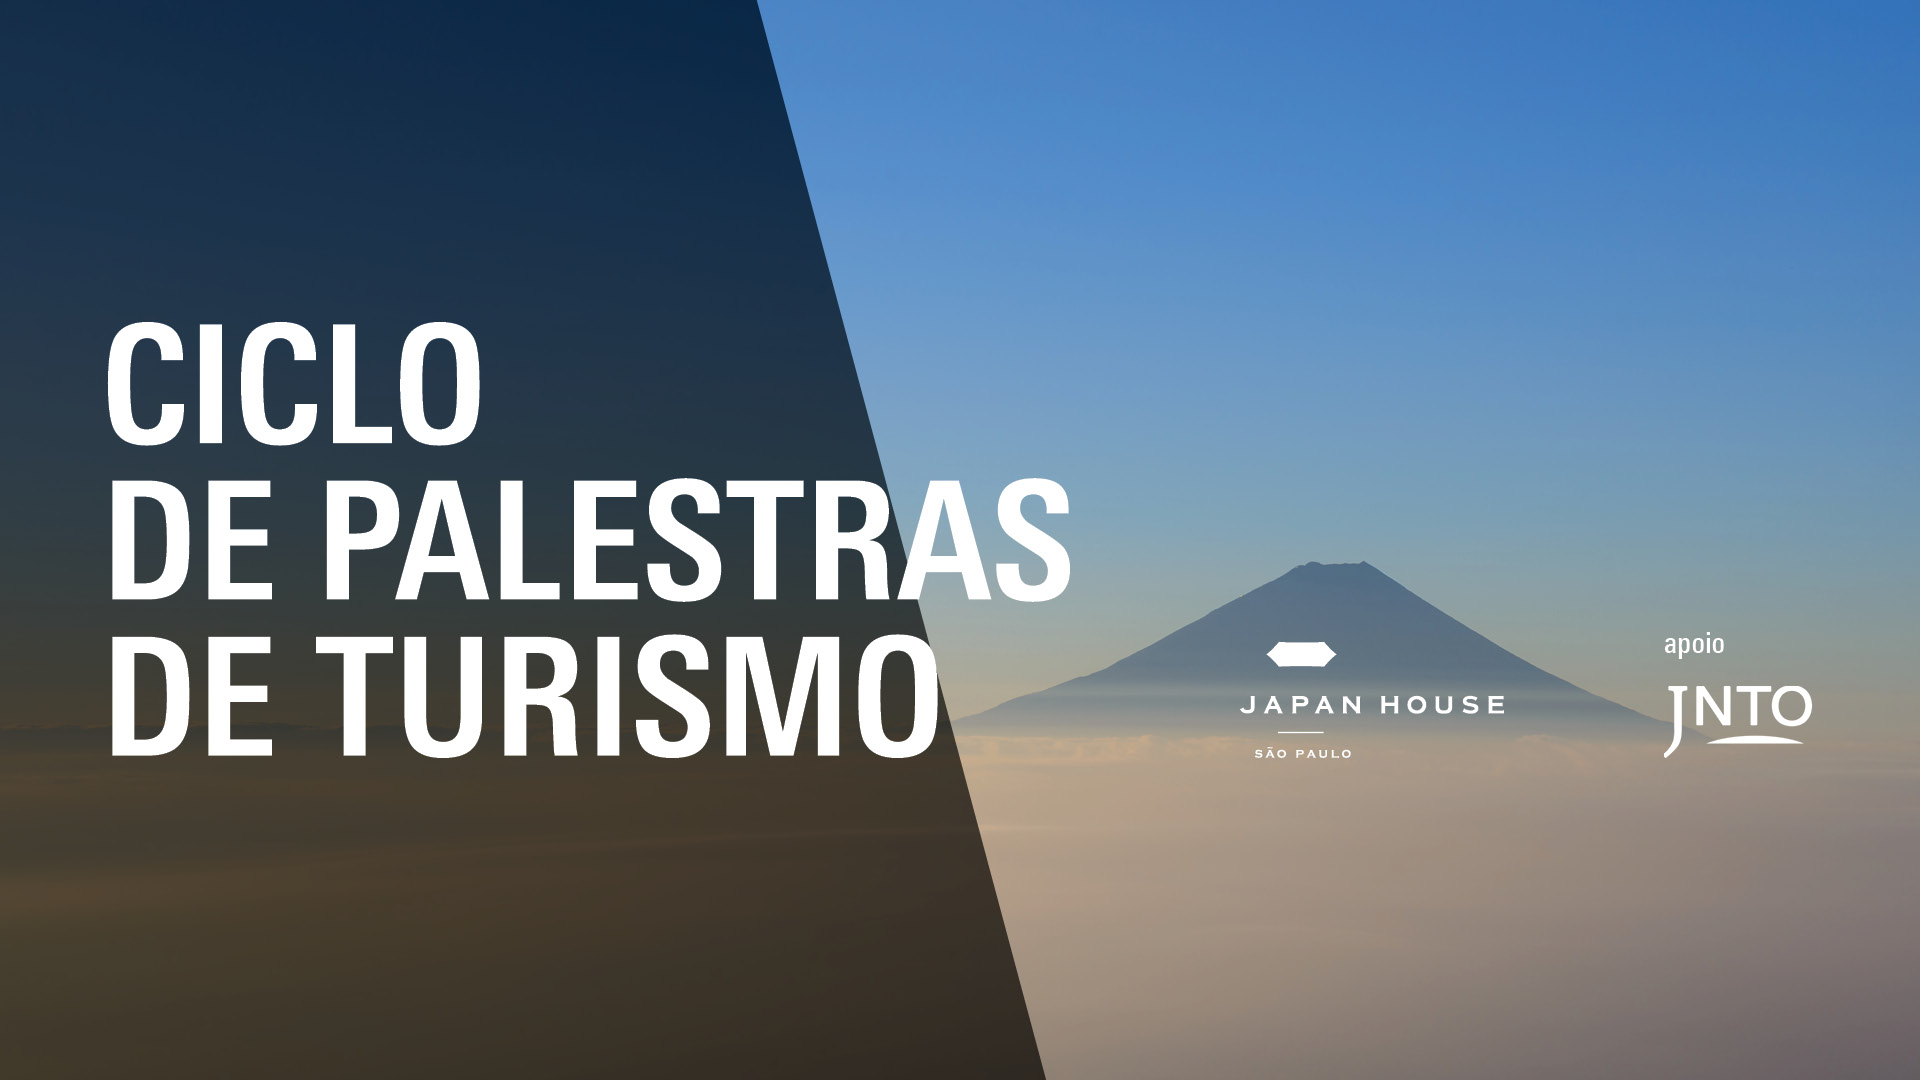 Japan House São Paulo promove Ciclo De Palestras Sobre Turismo